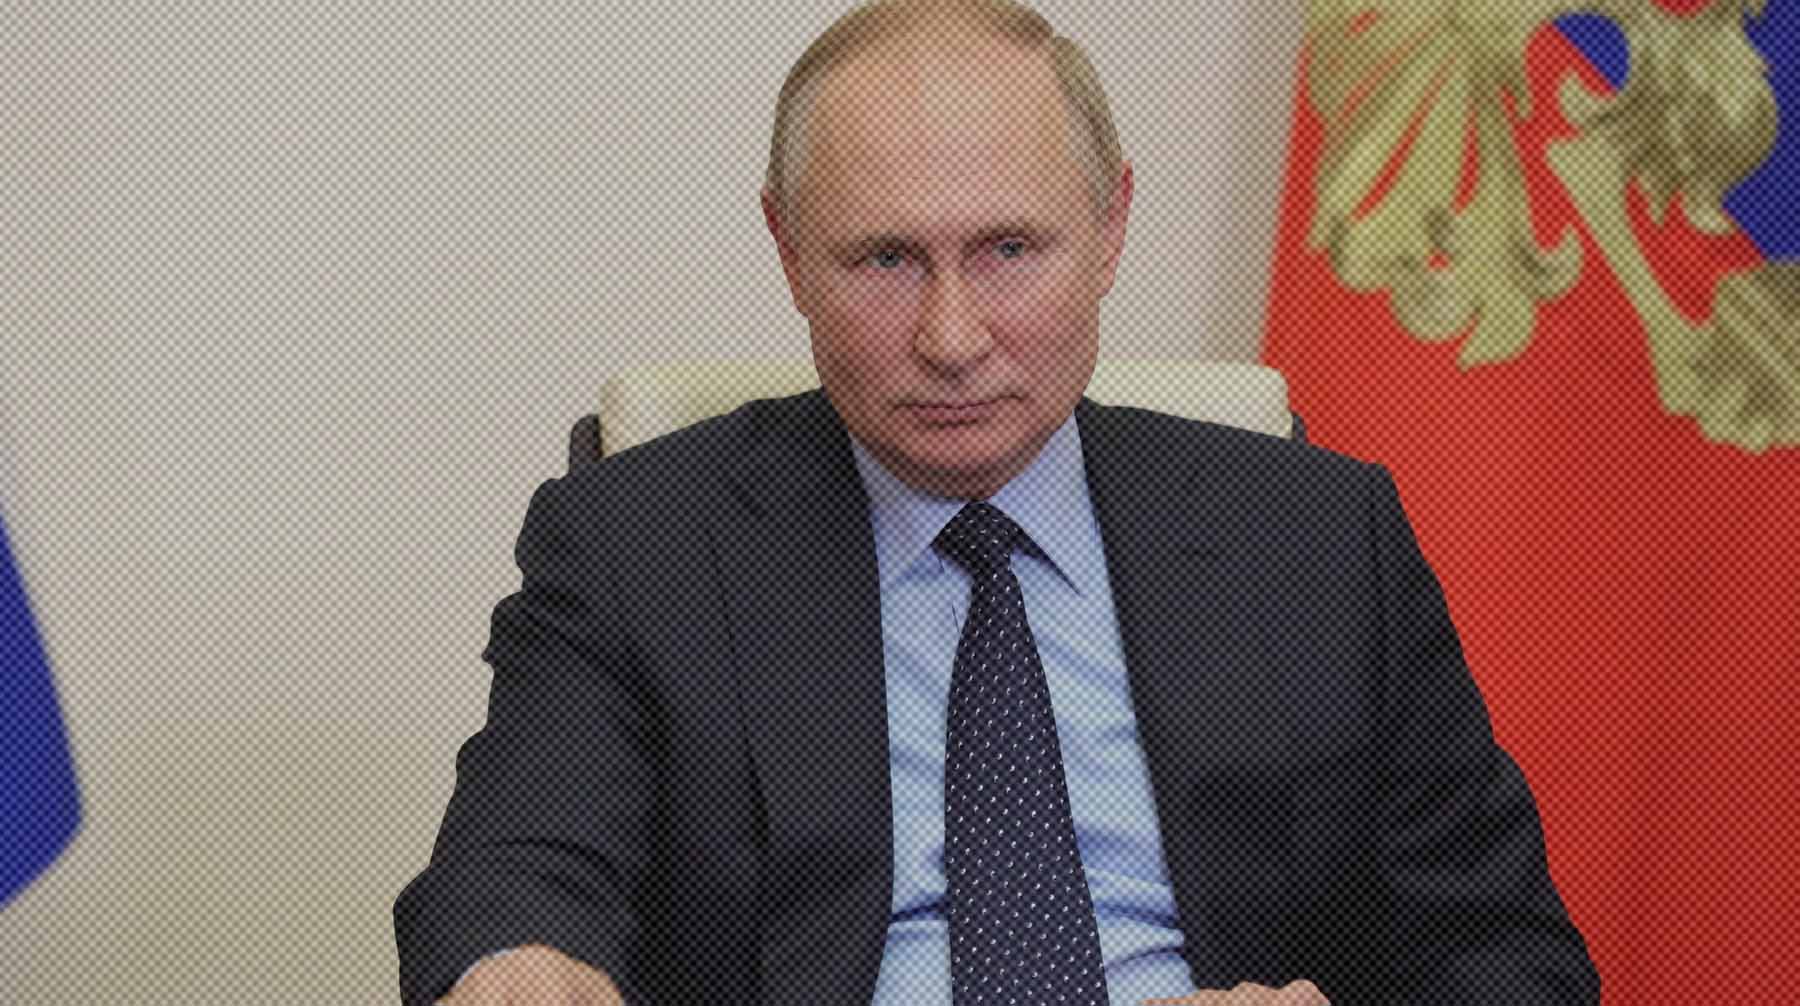 Ранее в СМИ писали, что Нечаев — единственный глава парламентской фракции, с кем так и не пообщался президент Фото: Global Look Press / Kremlin Pool